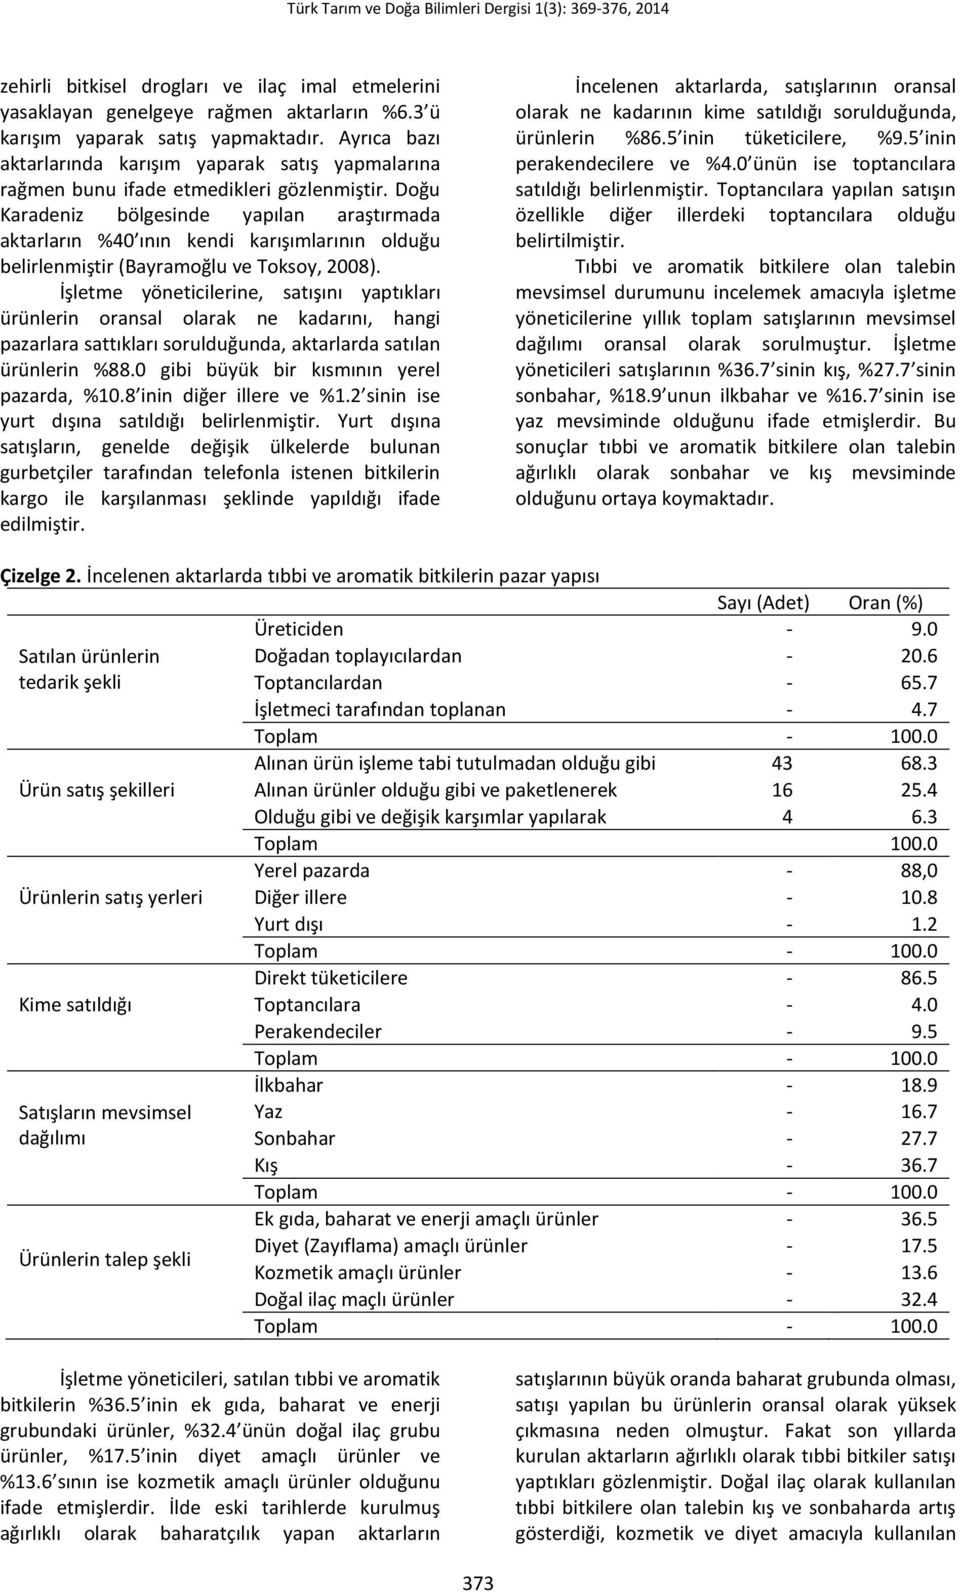 Doğu Karadeniz bölgesinde yapılan araştırmada aktarların %40 ının kendi karışımlarının olduğu belirlenmiştir (Bayramoğlu ve Toksoy, 2008).